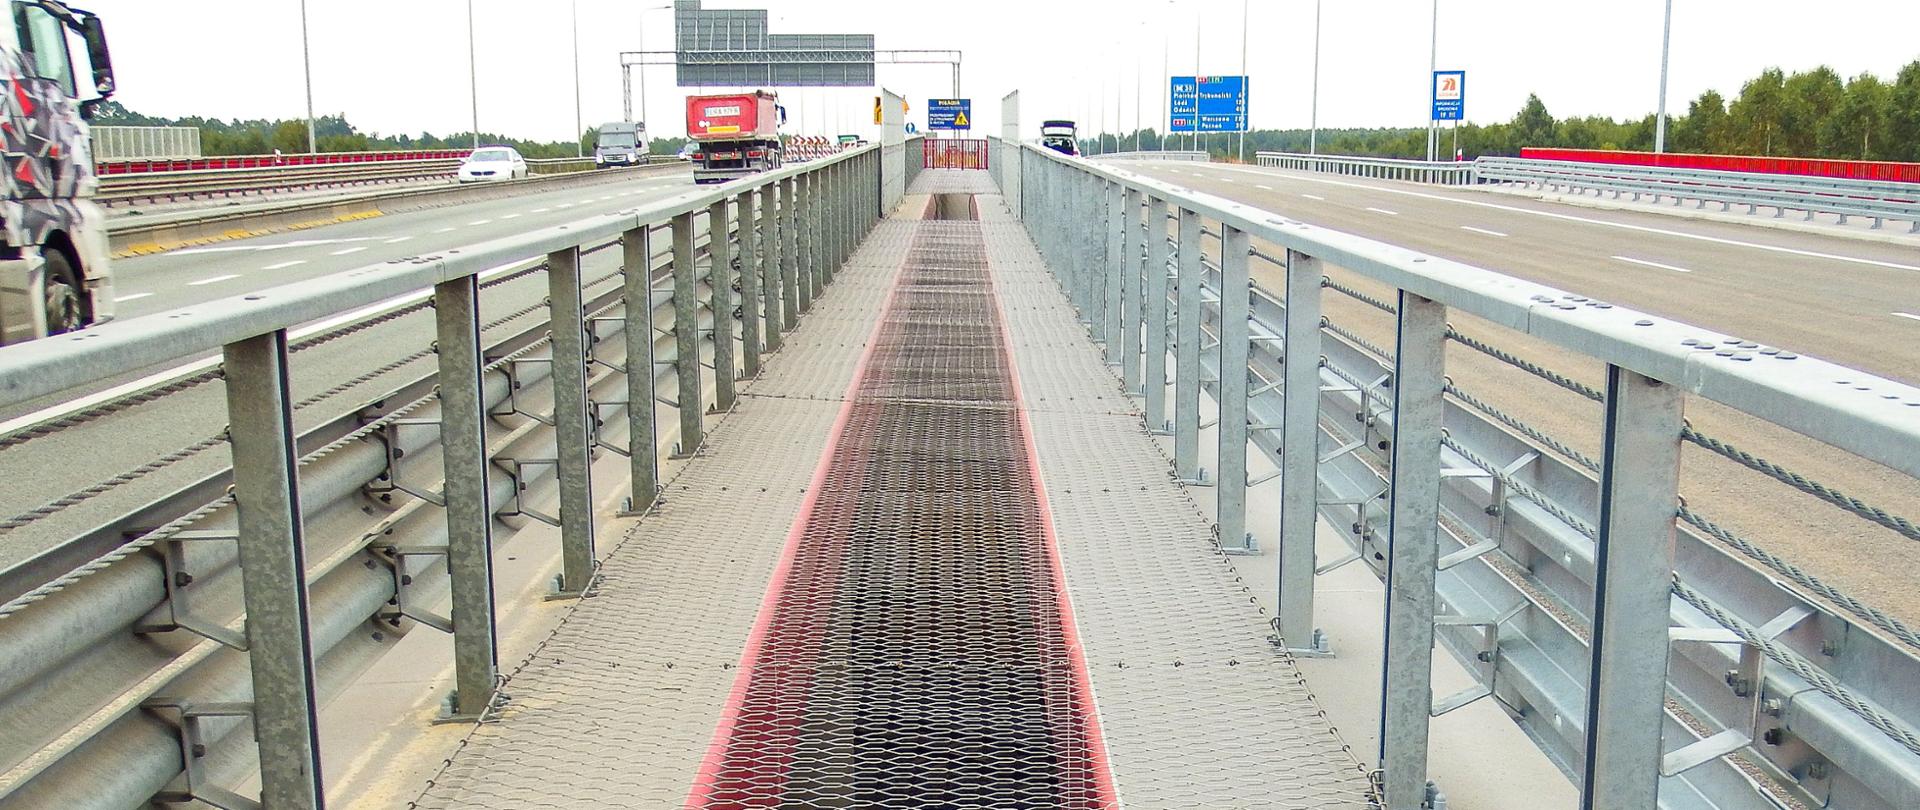 Fotografia z poziomu terenu na zabezpieczone siatką odstępy pomiędzy pomostami wiaduktów autostrady A1. Wiadukty zlokalizowane są na obu jezdniach autostrady, po których odbywa się ruch pojazdów. Belki gzymsowe obiektów w kolorze czerwonym. 